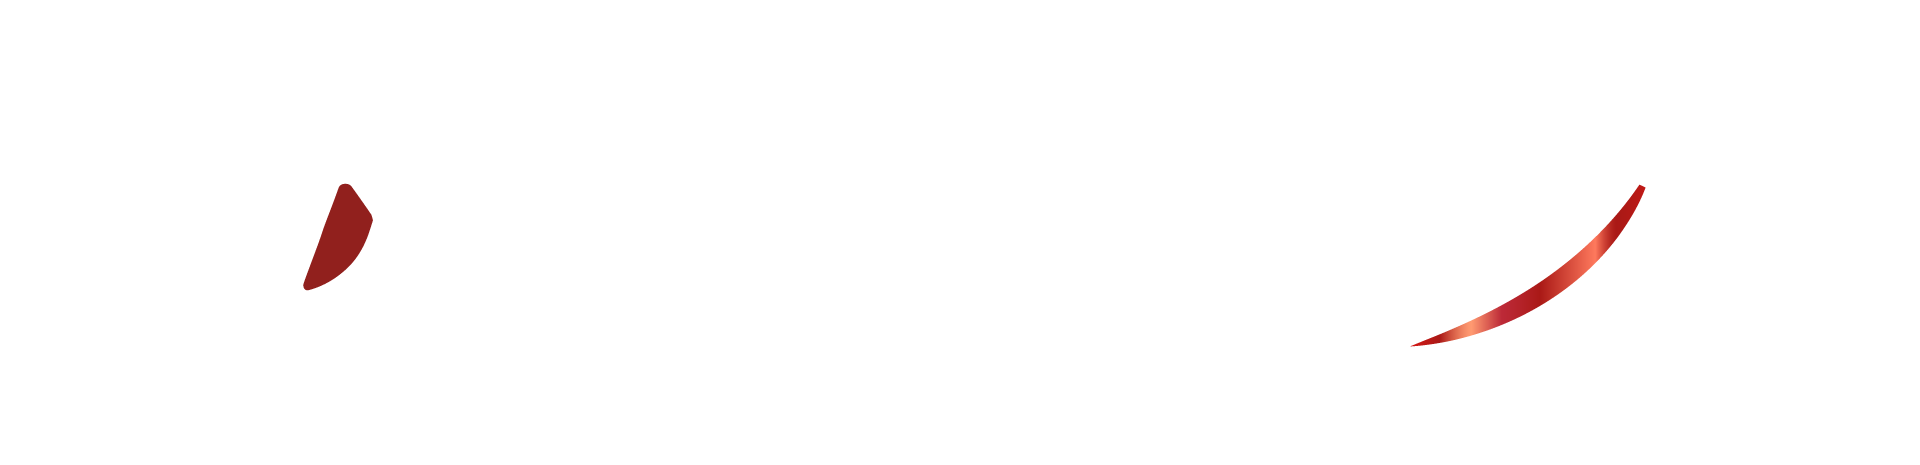 Atuz-Marketing---10-Anos_Selo-Final